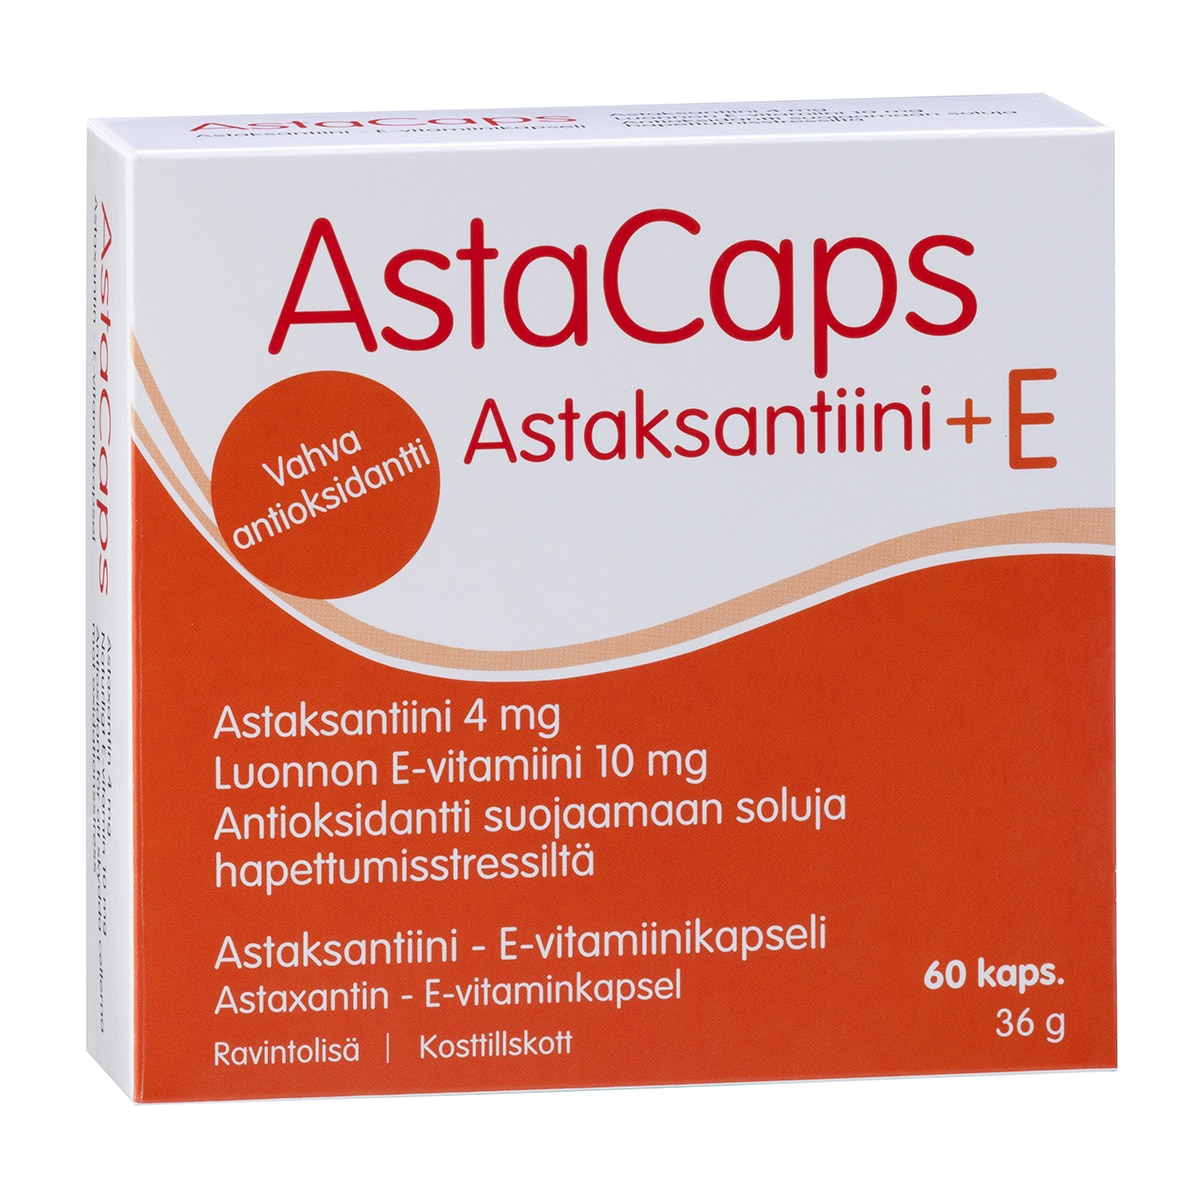 Astacaps, astaksantiini - luonnon E-vitamiinikapseli